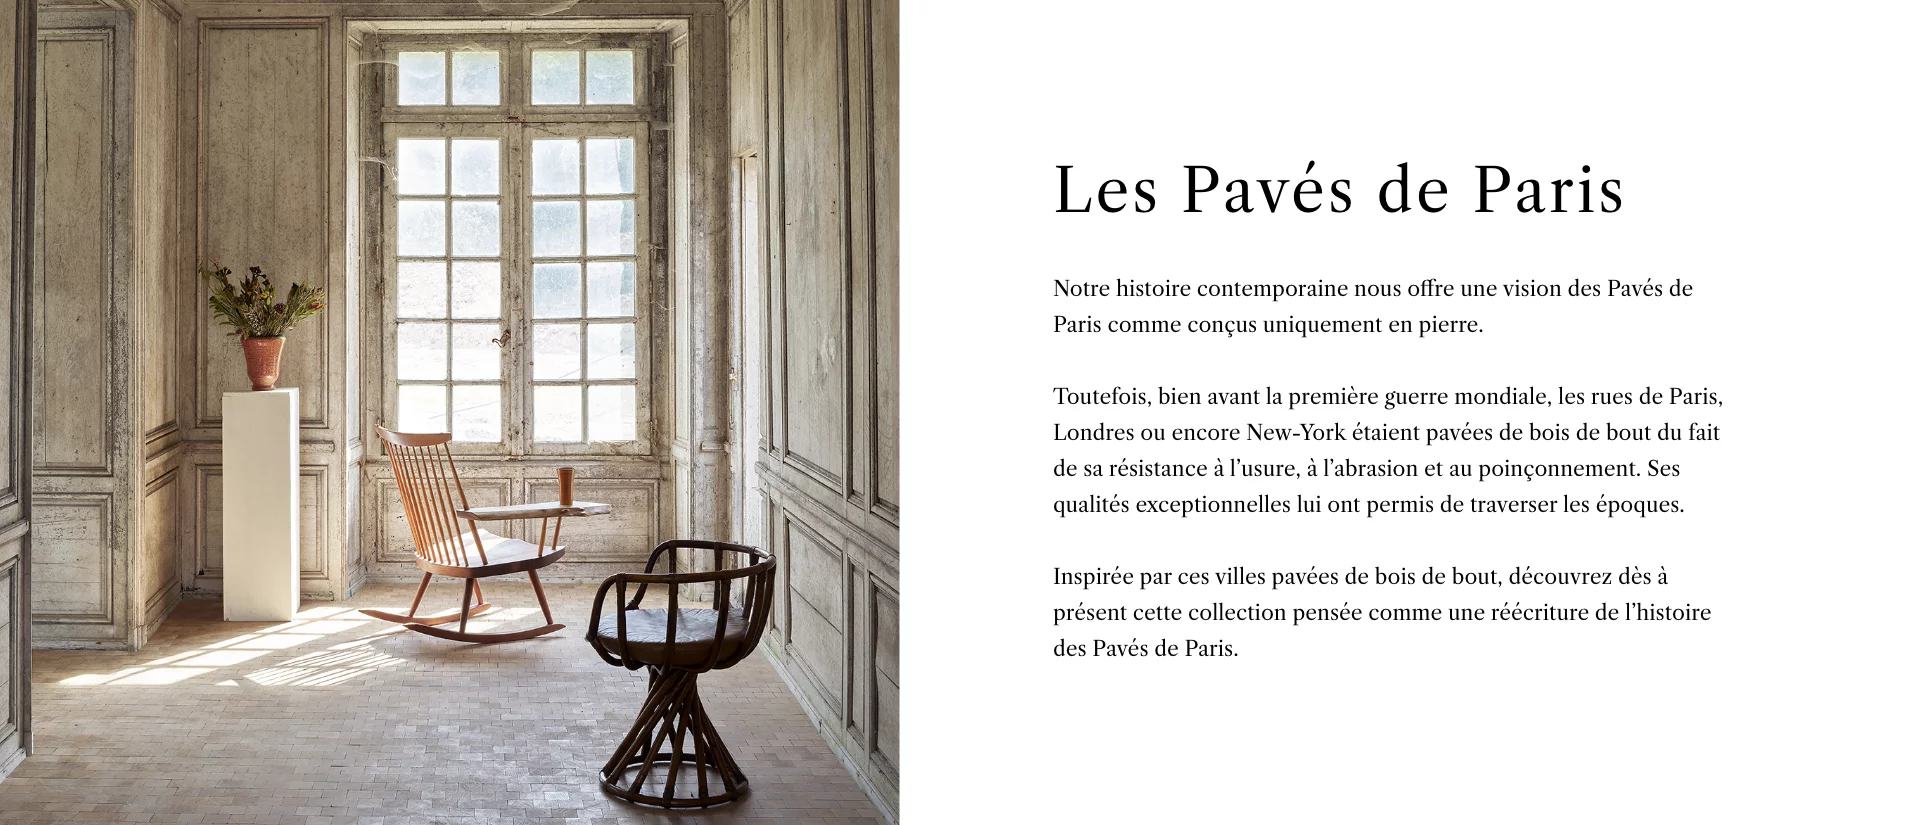 Page Collection - Les Paves de Paris - Description